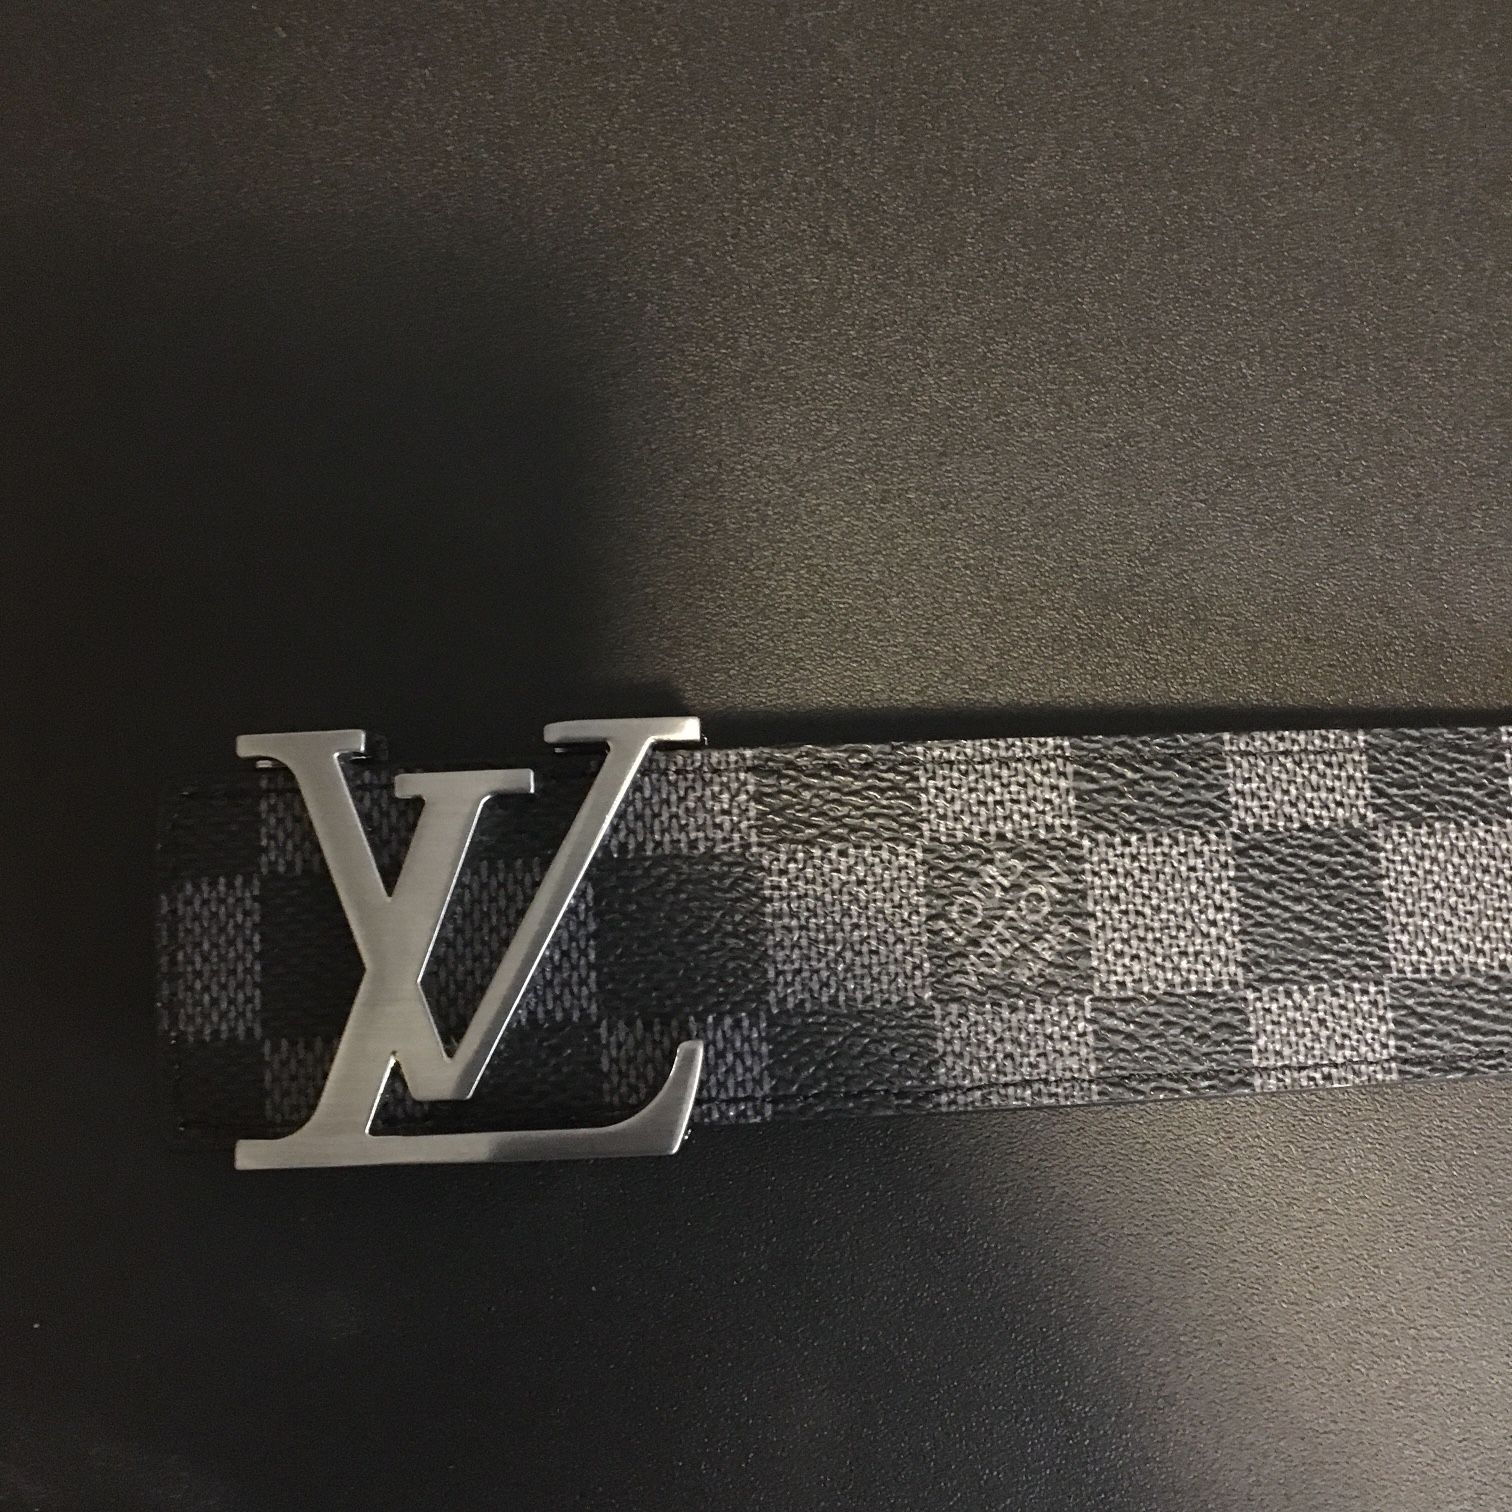 Louis Vuitton, Accessories, Black Louis Vuitton Belt Mens 44